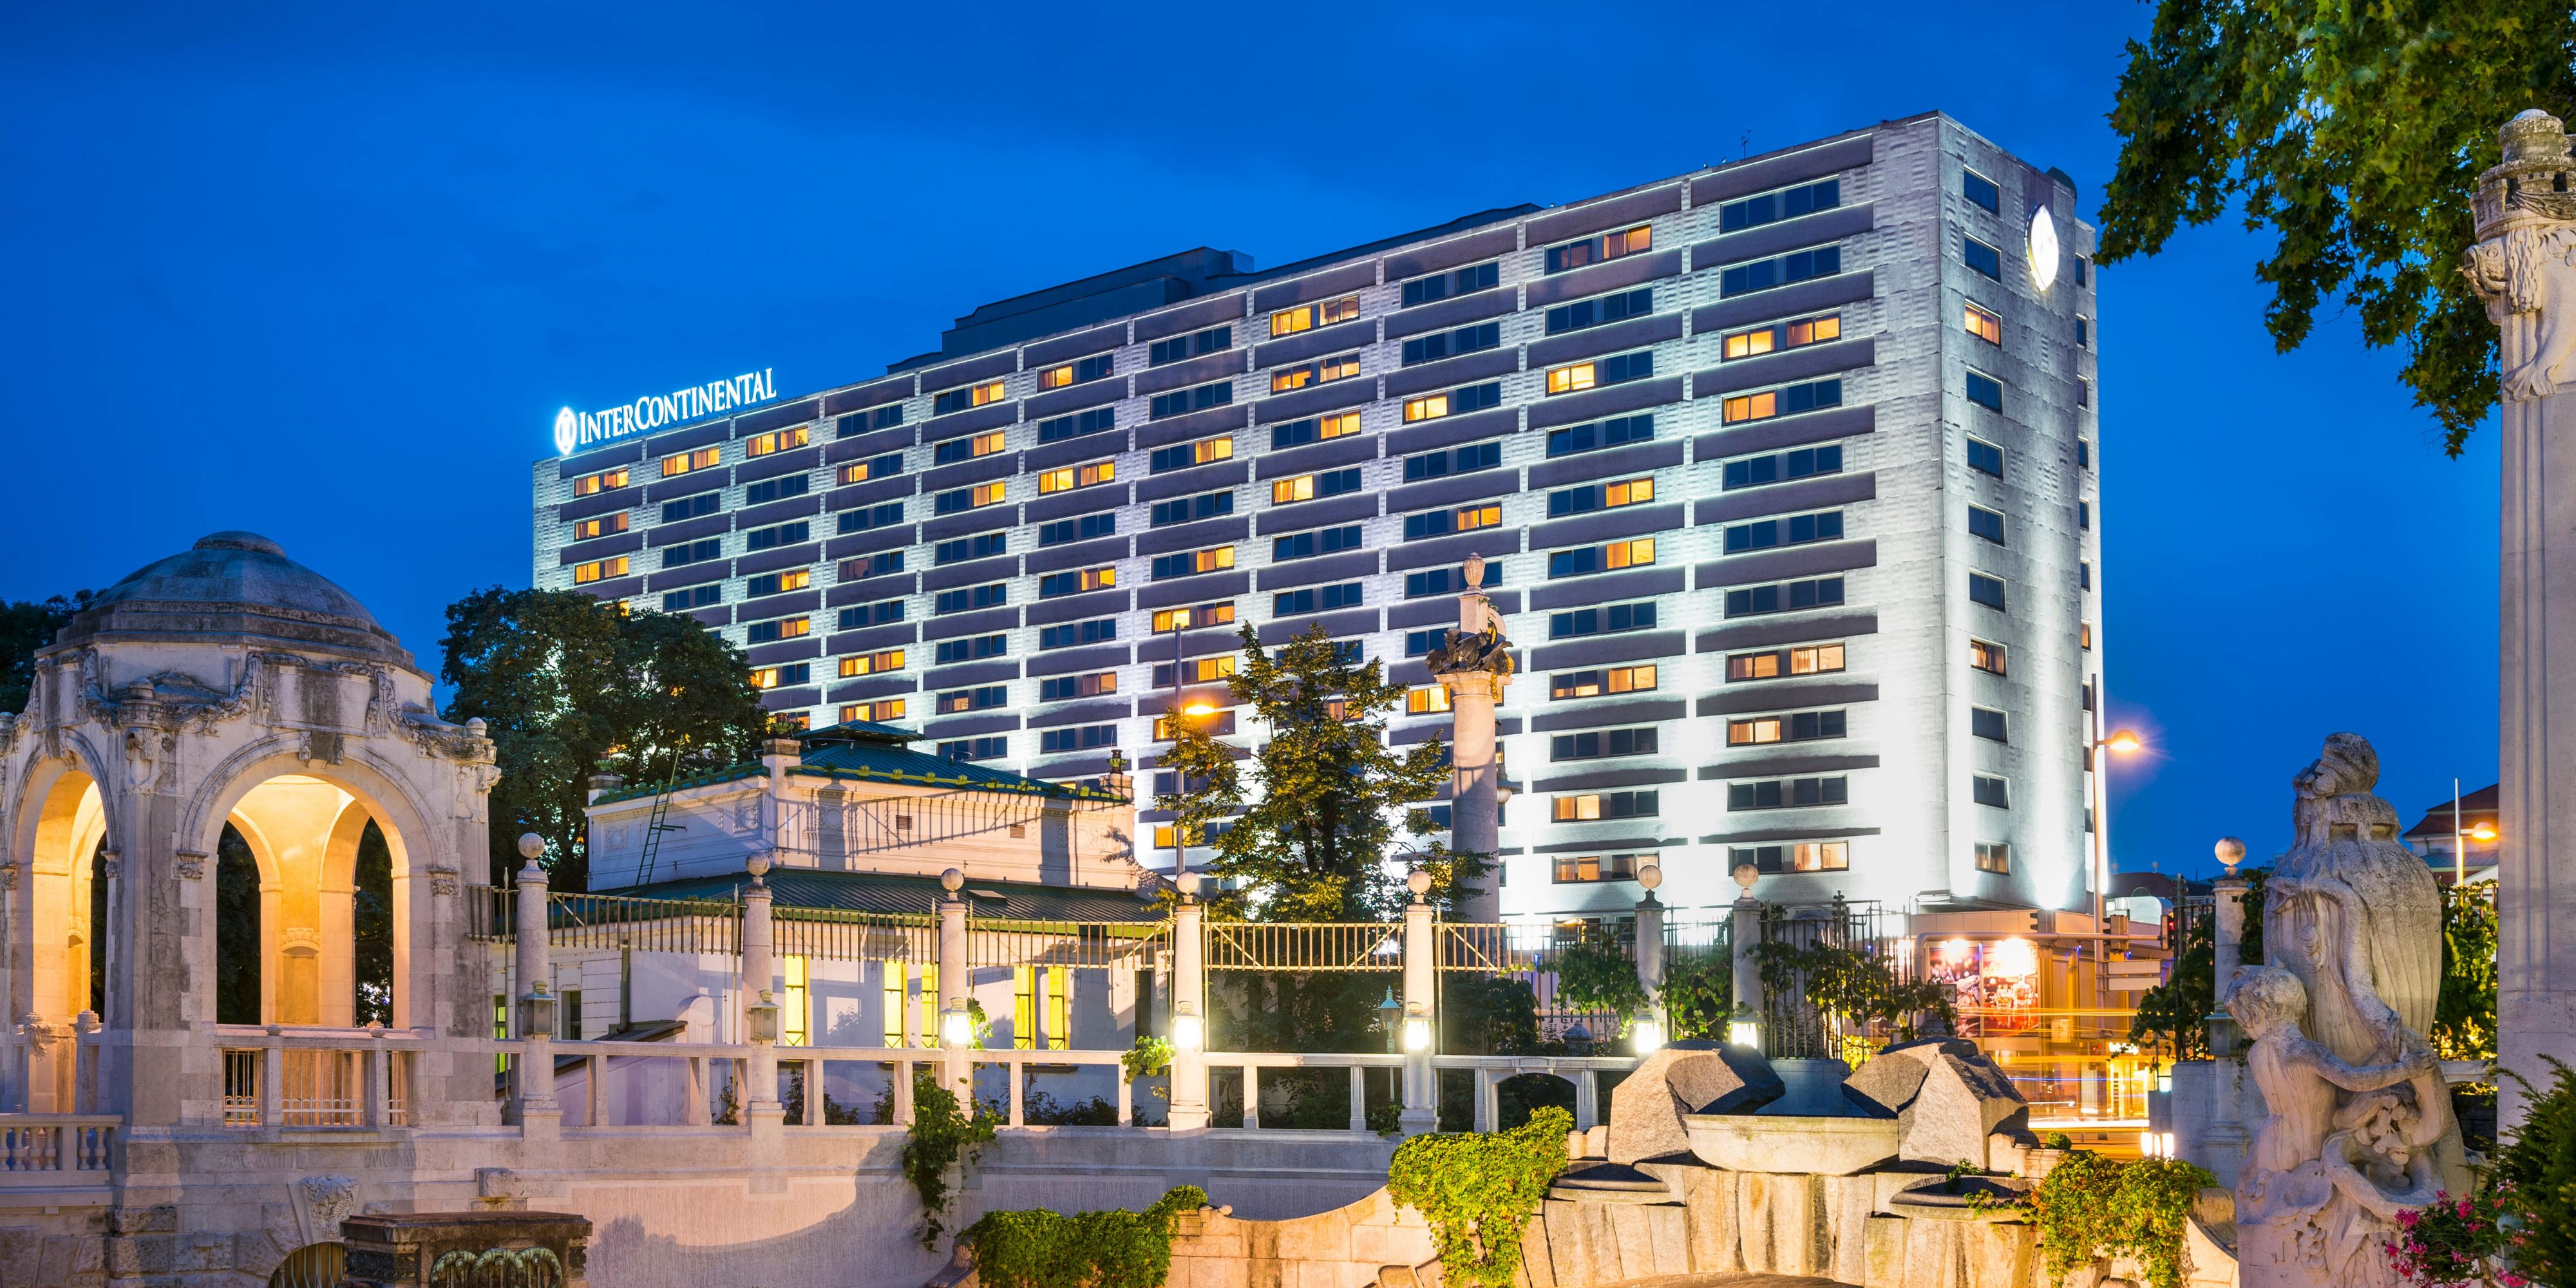 Luxury City Centre Hotel Intercontinental Hotel Vienna